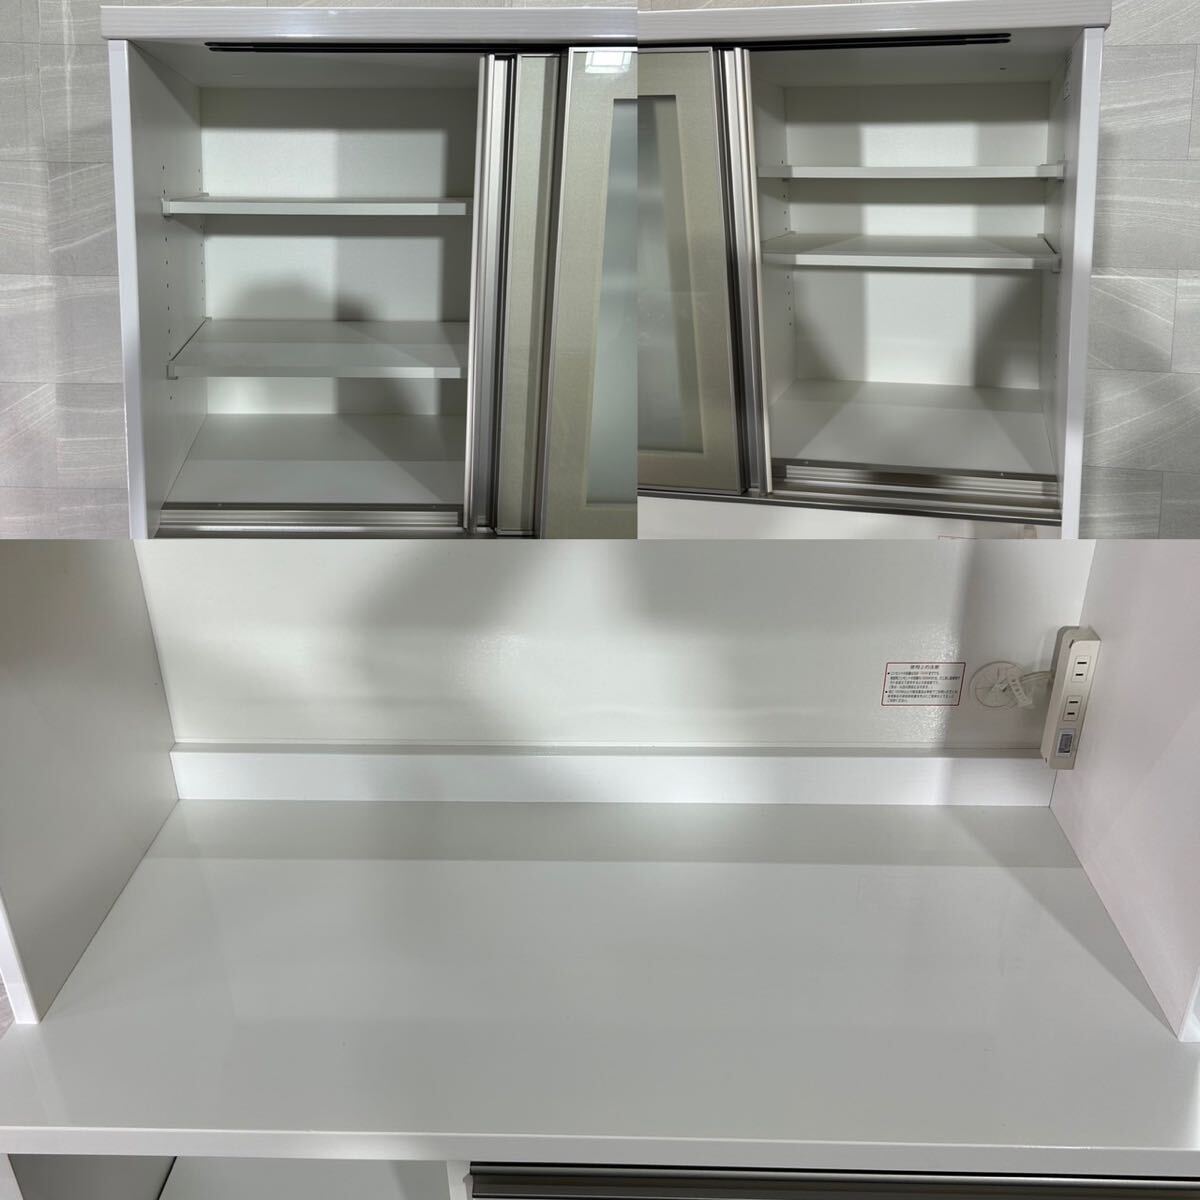 ニトリ リガーレ100 レンジボード 食器棚 キッチンボード ホワイト d2148 格安 お買い得 人気商品 幅100cm_画像3